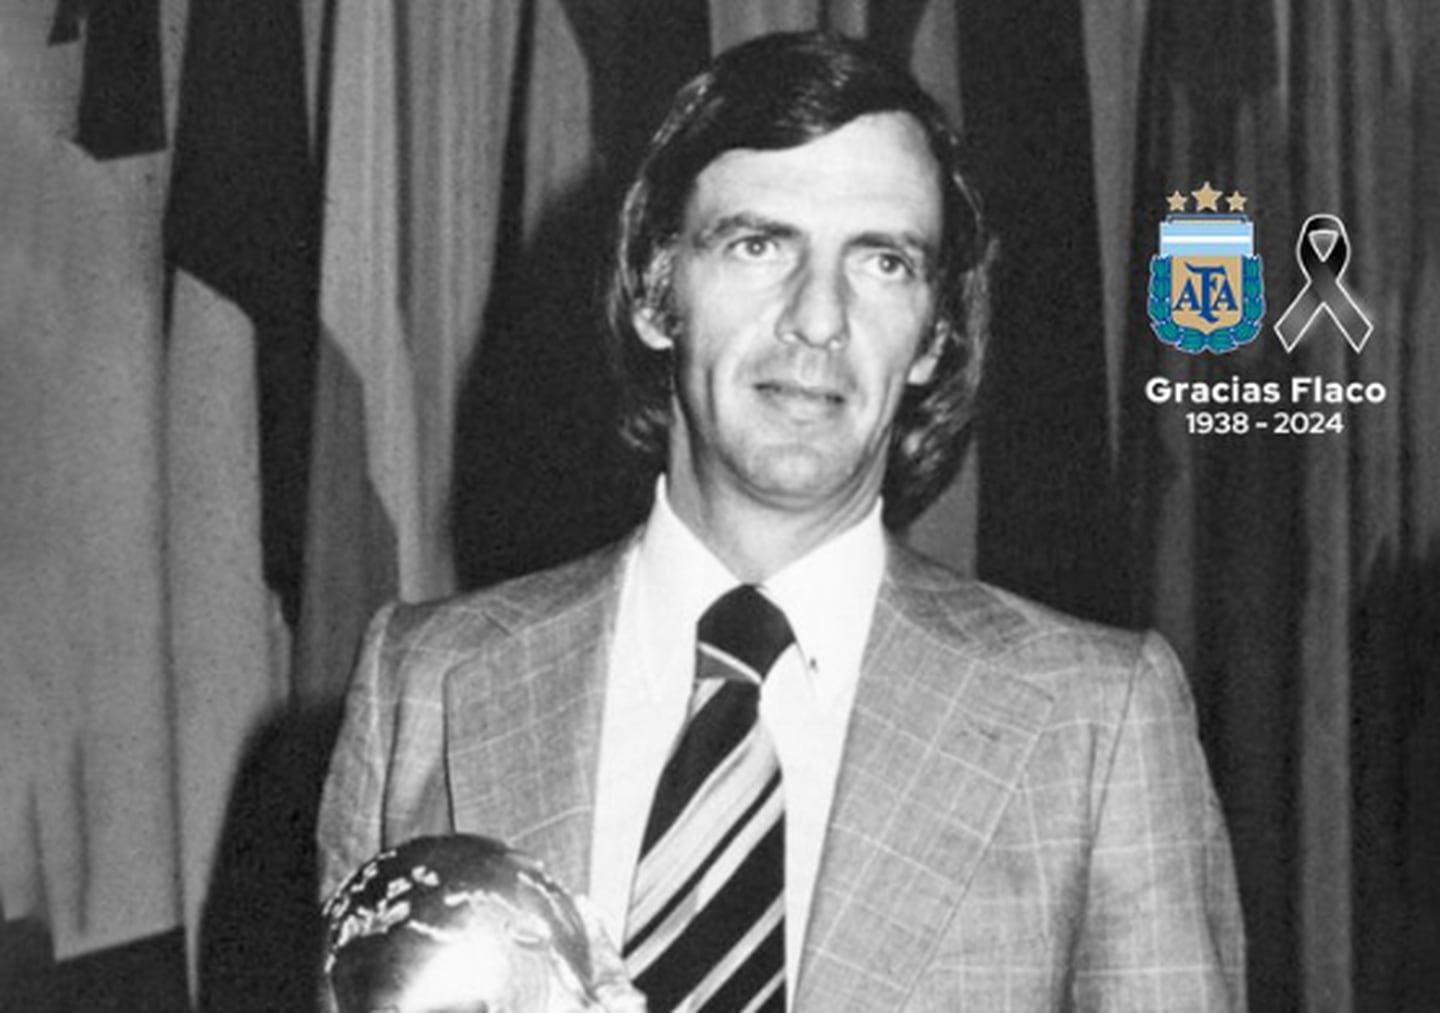 La Asociación del Fútbol Argentino (AFA) anunció el fallecimiento de Menotti a la edad de 85 años en su red social.